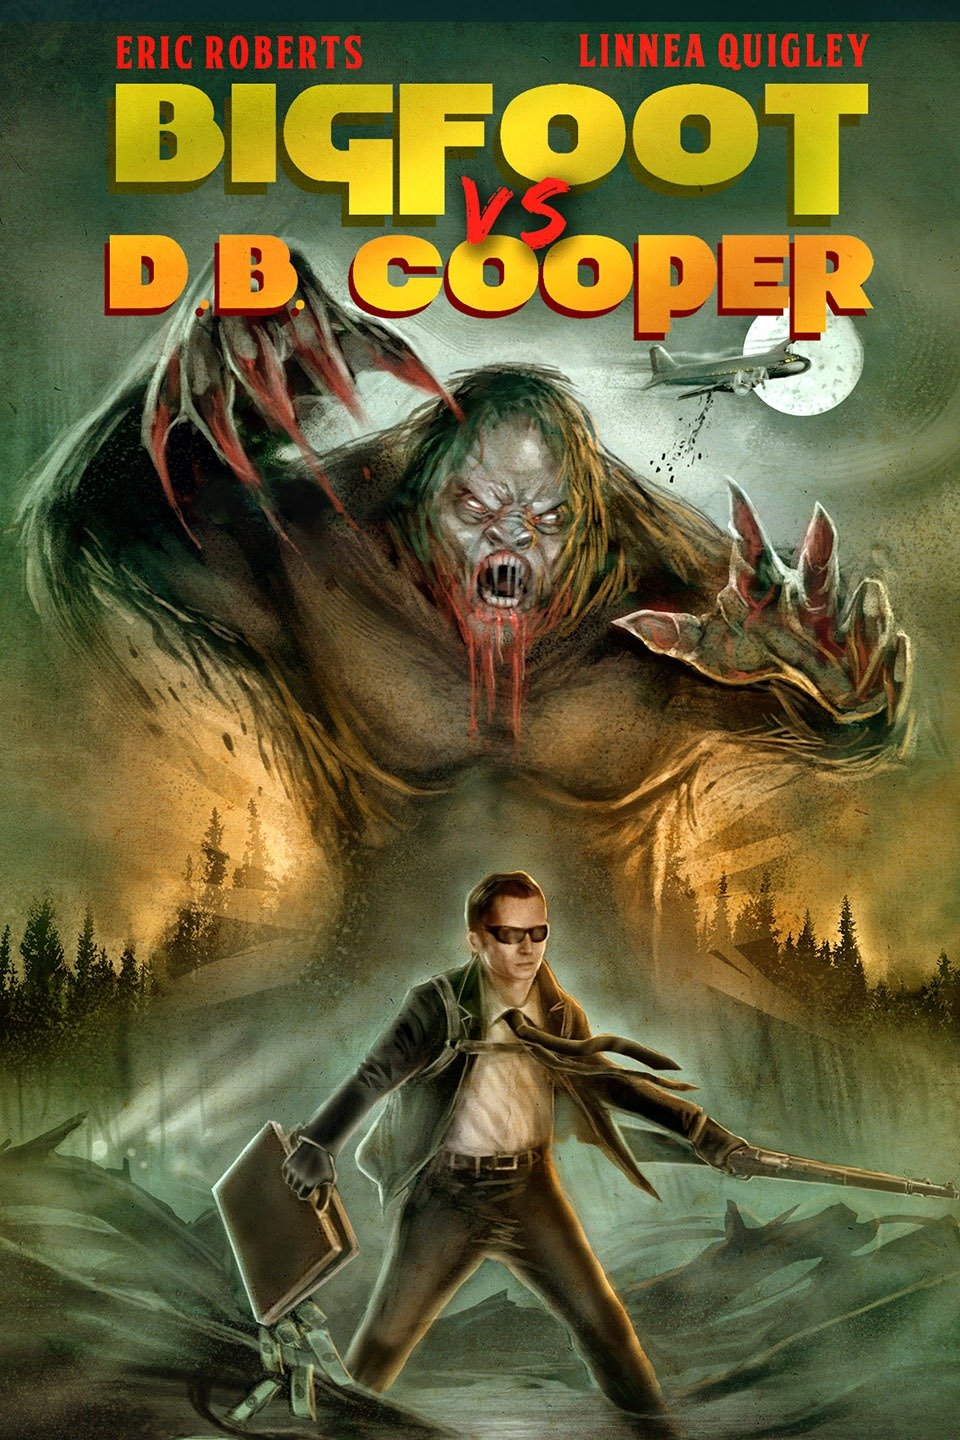 D.b. cooper vs bigfoot